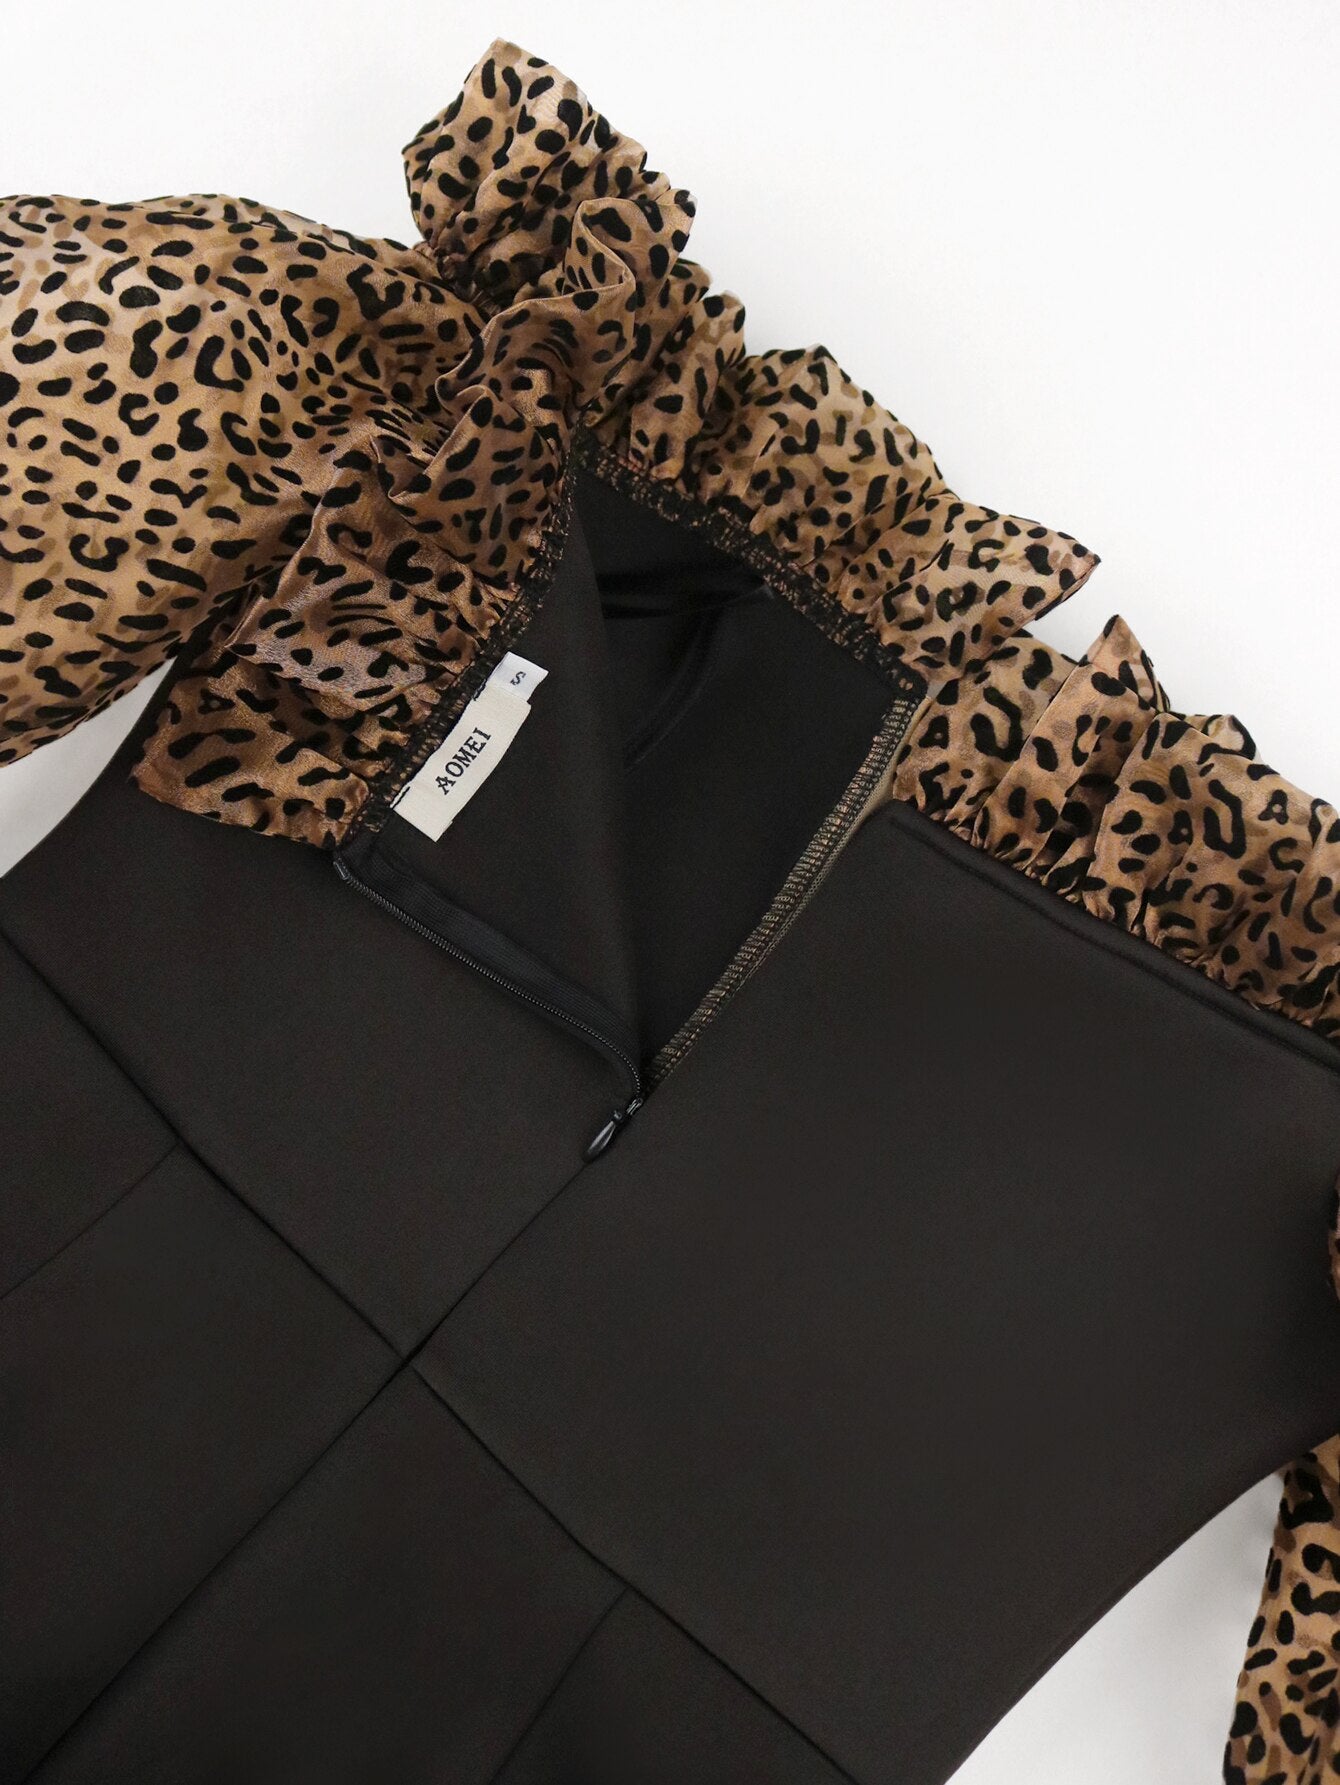 Alexia Cheetah Sleeve Dress